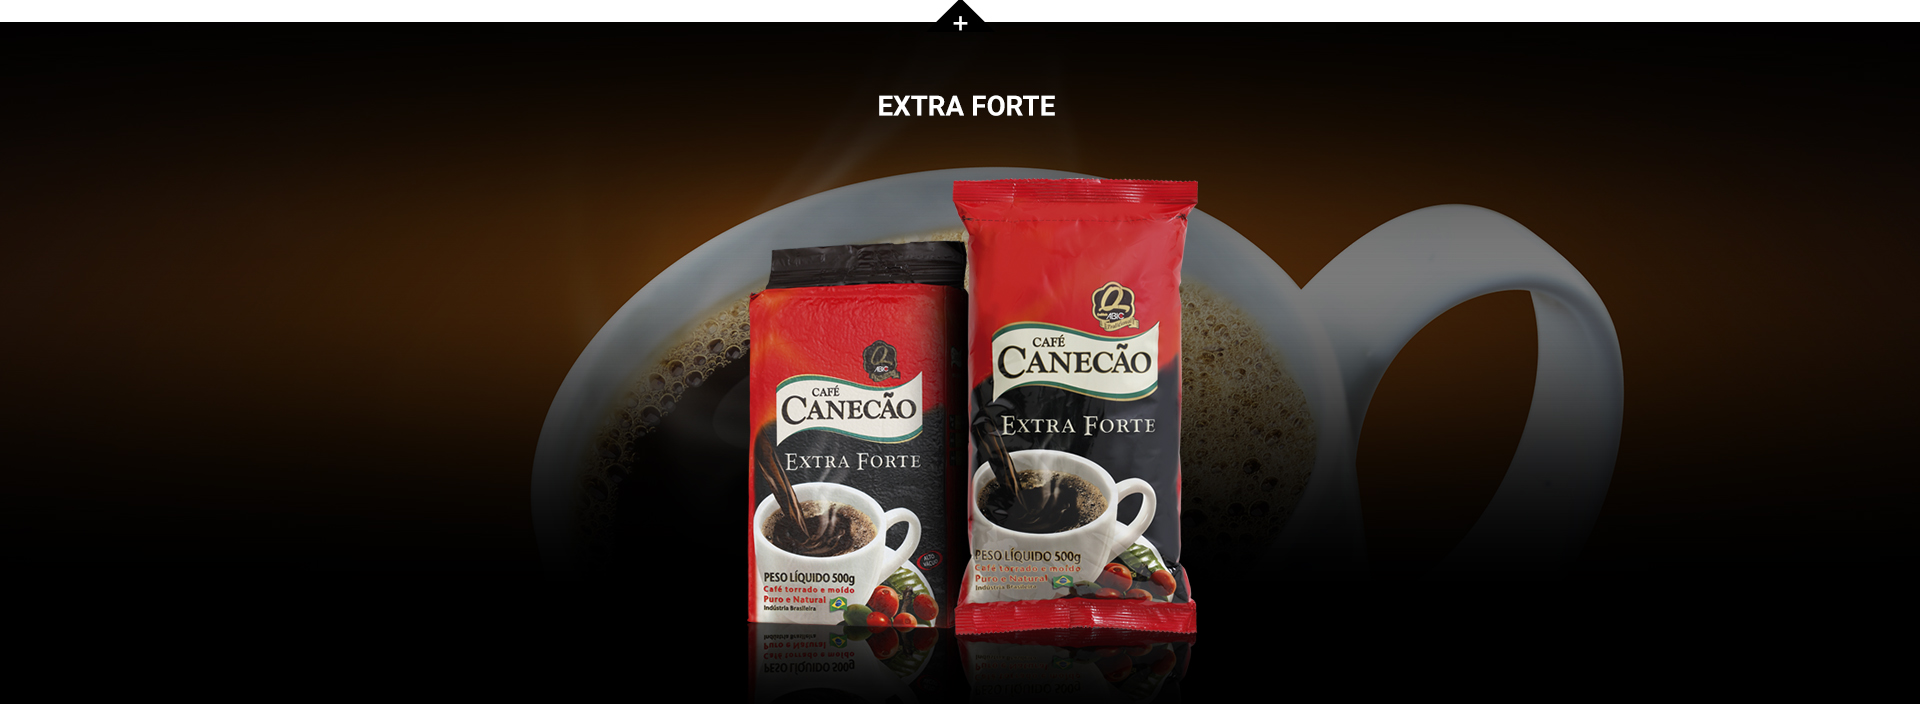 Cafe Do Ponto - Extra Forte 500g